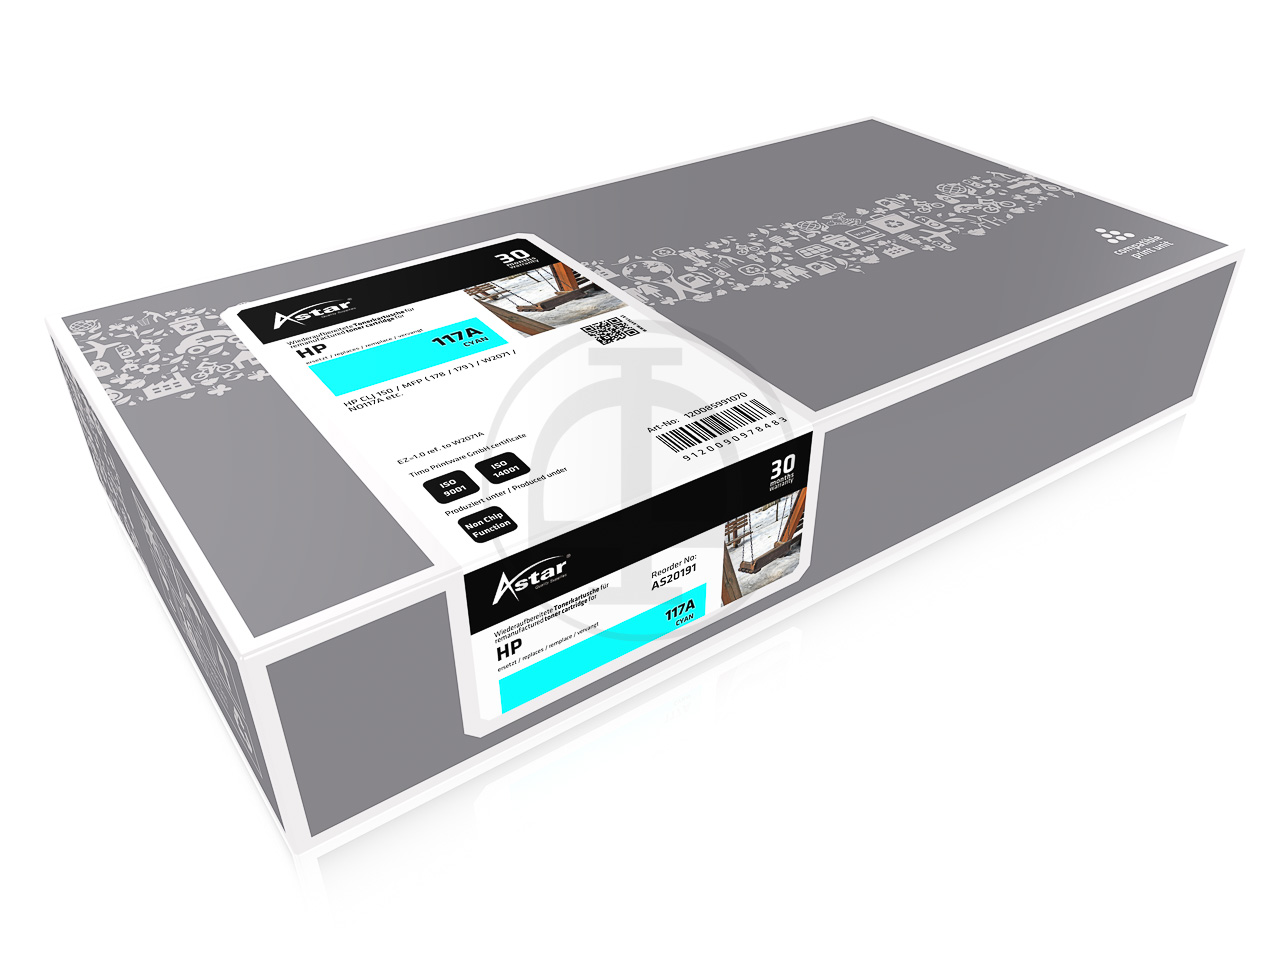 Astar W2071A Druckerpatrone mit einer Seitenkapazität von 700 Seiten